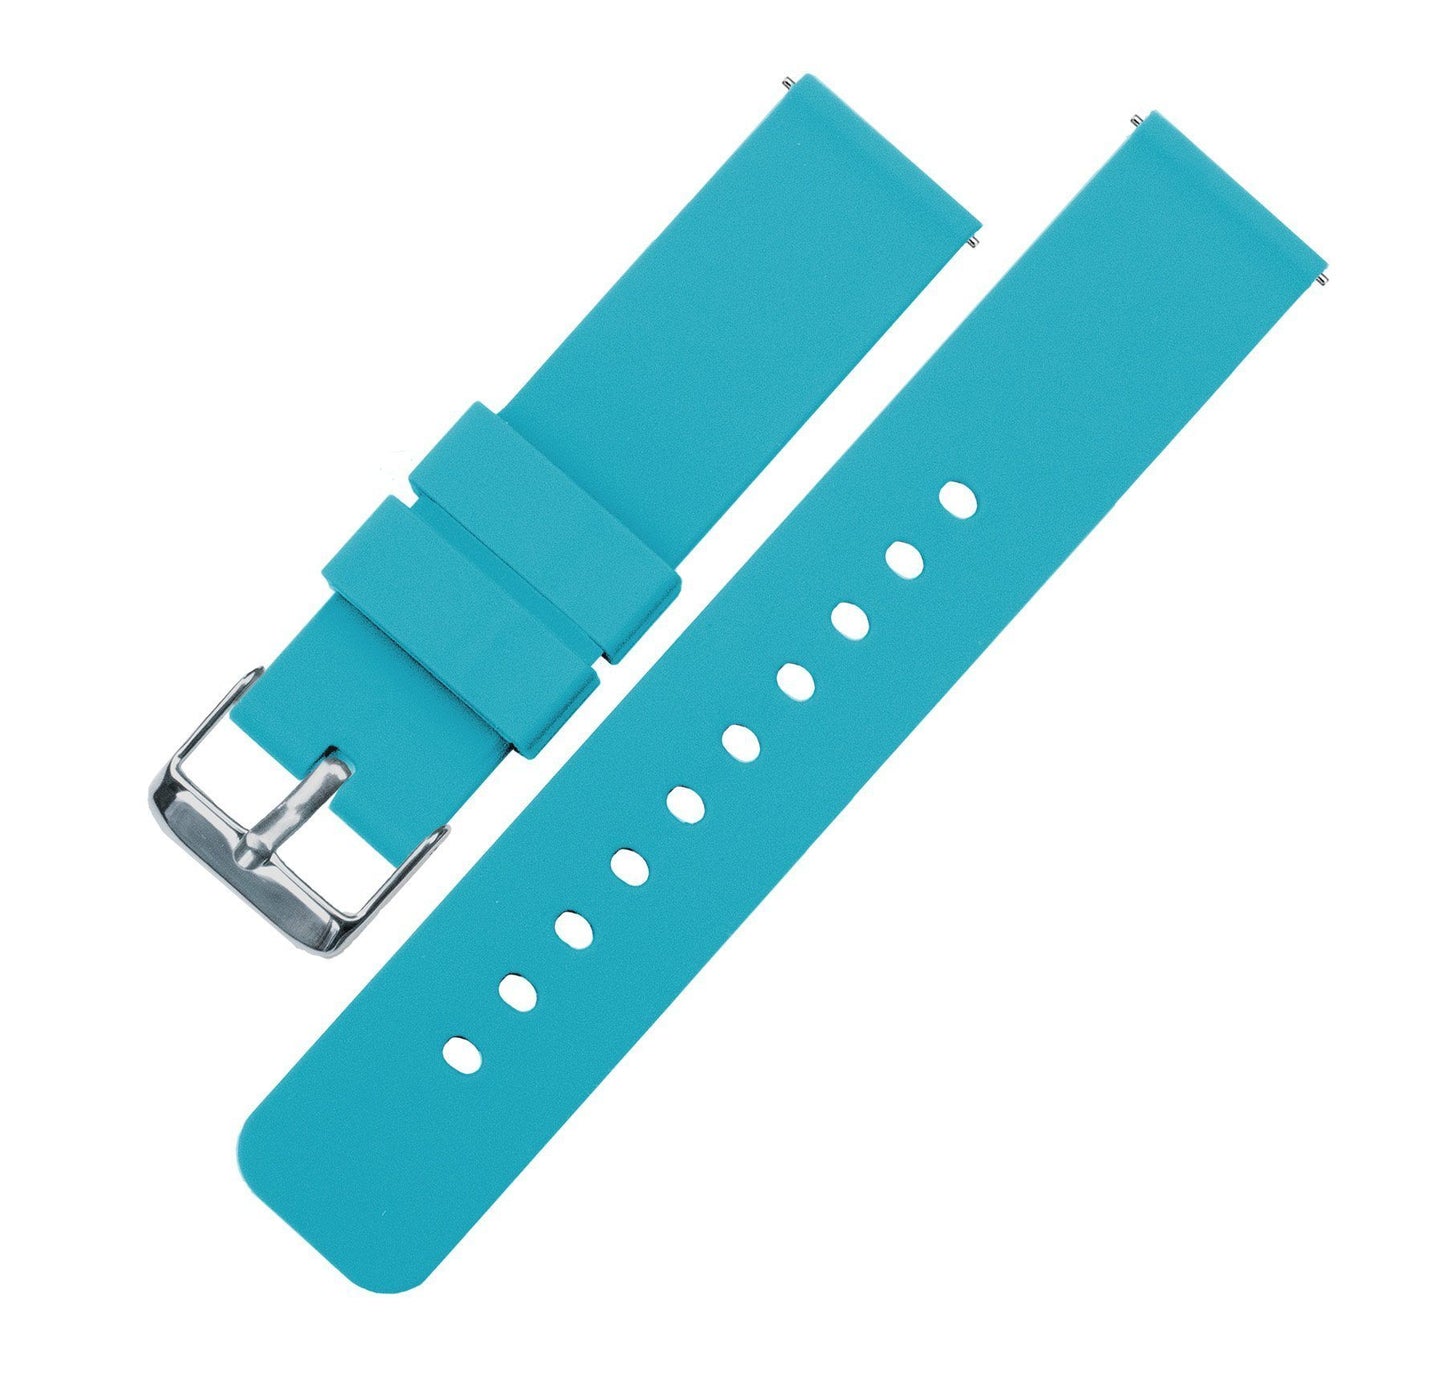 Zenwatch & Zenwatch 2  | Silicone | Aqua Blue - Barton Watch Bands